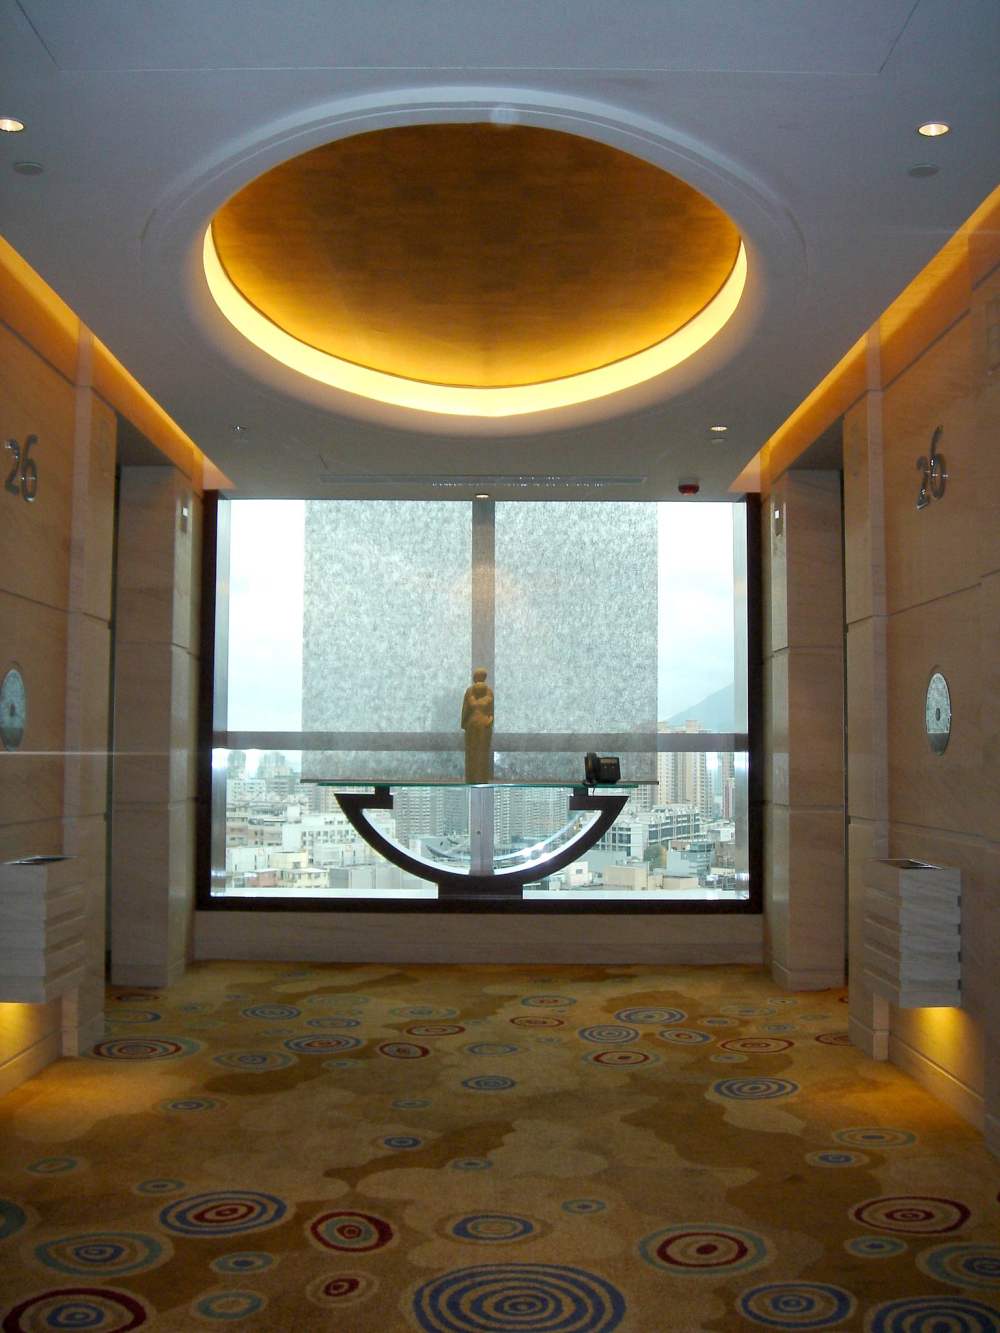 香港朗豪酒店(Langham Place, Mongkok, Hong Kong)_LH公共设施A。0173.jpg